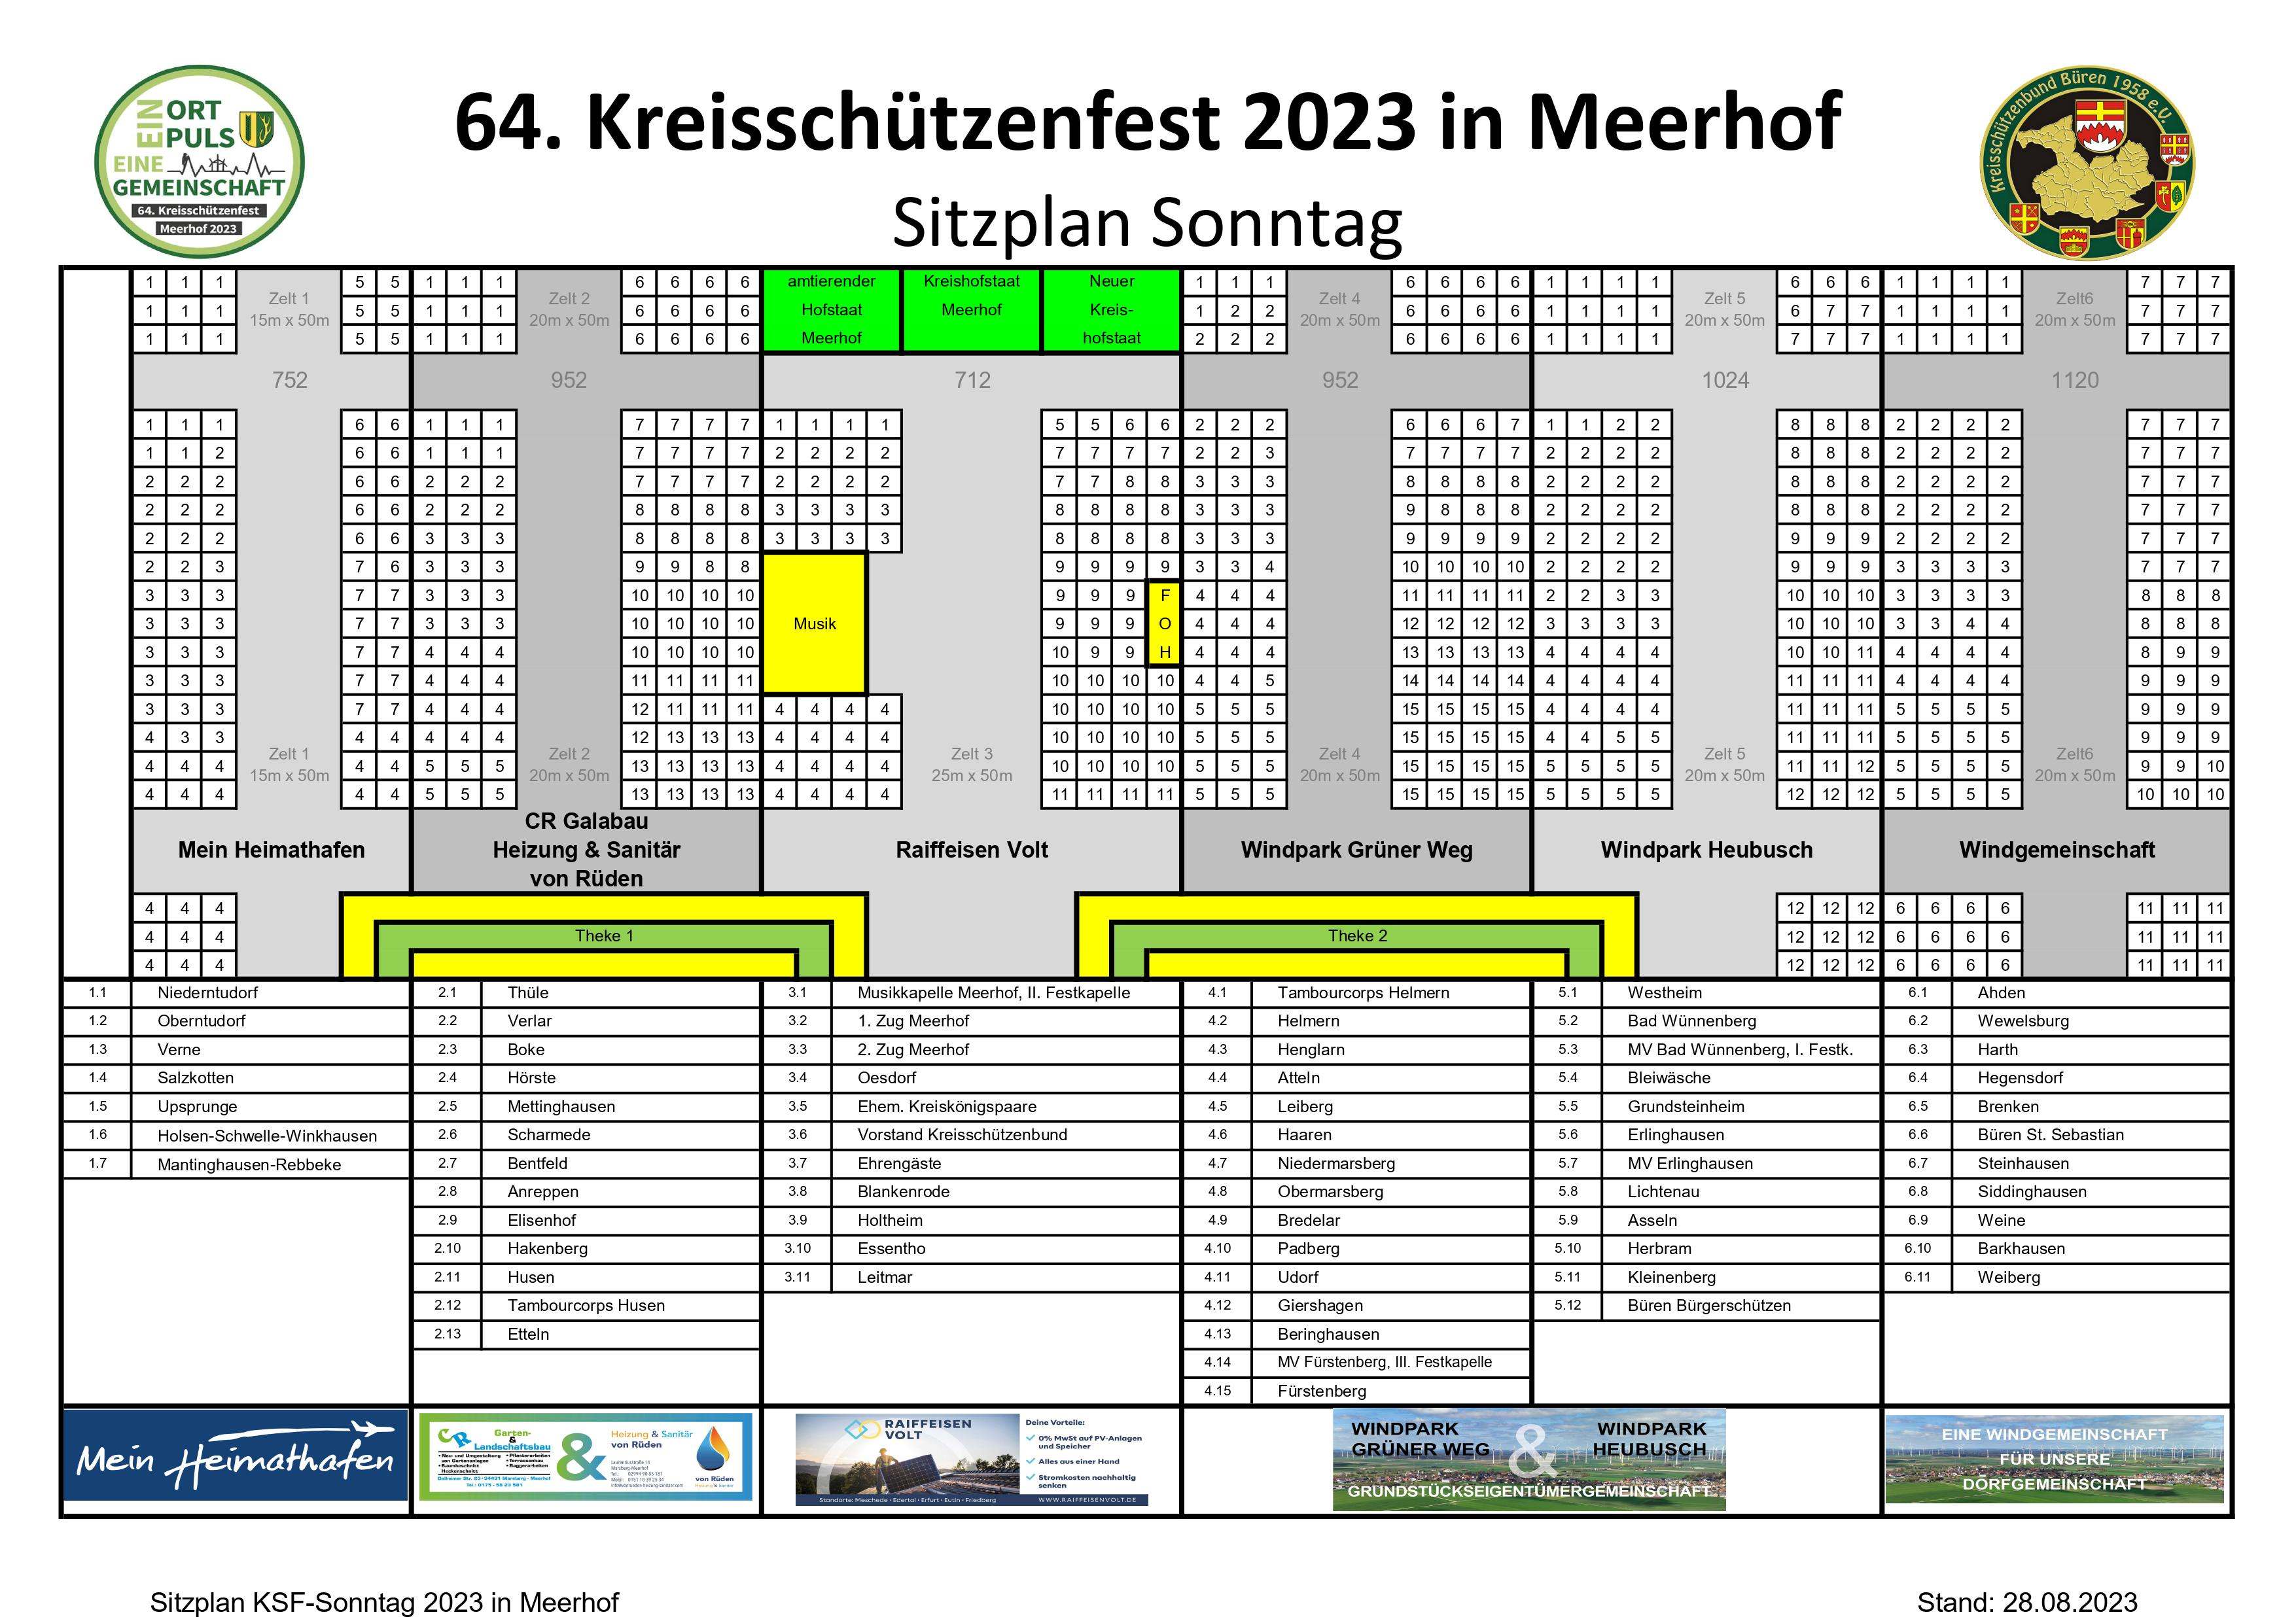 23 09 03 Sitzplan KSF Sonntag Meerhof Endfassung Medien web